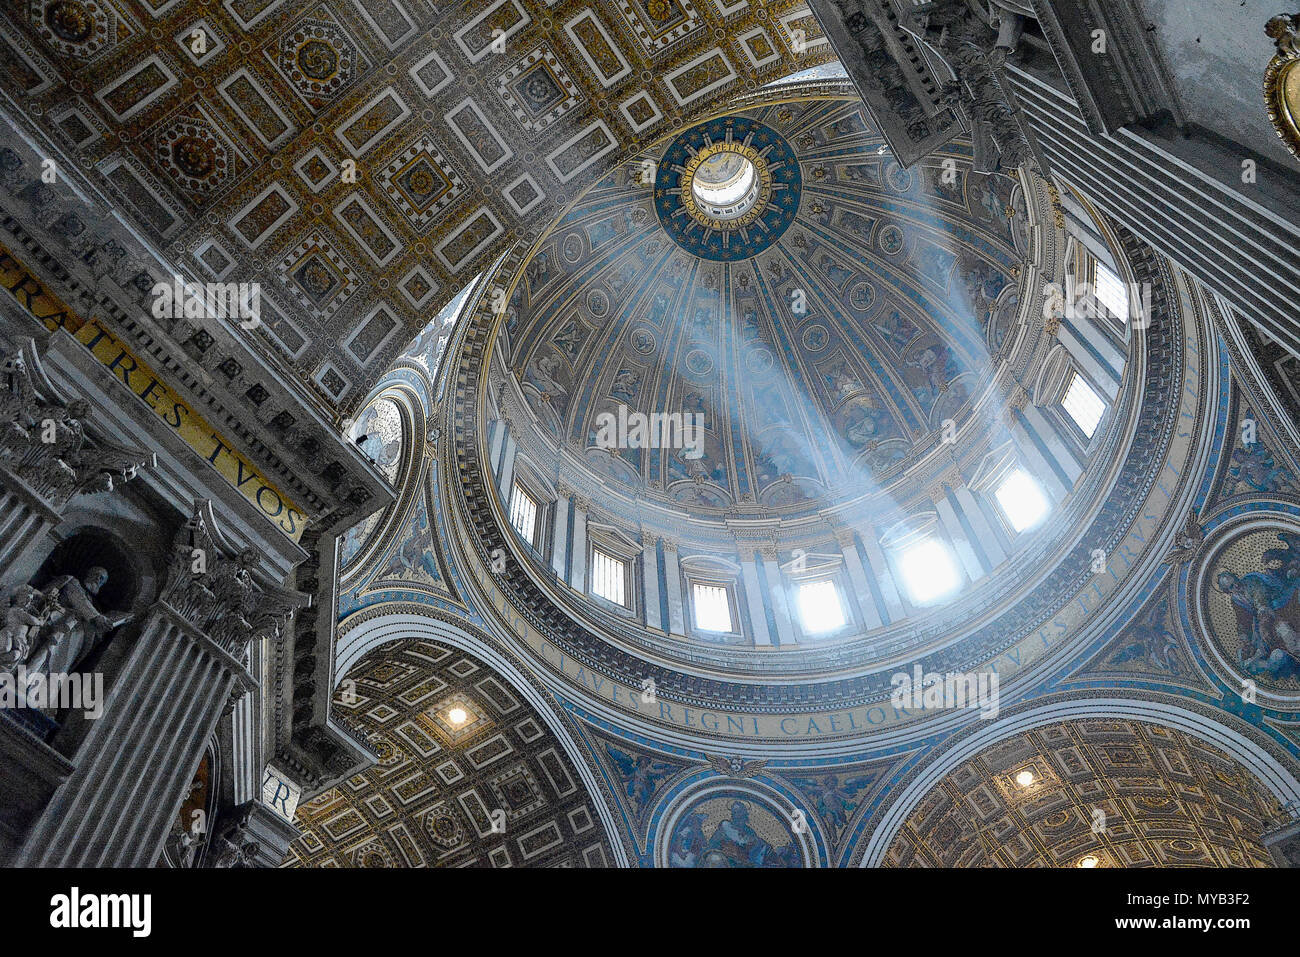 La basilique Saint Pierre, l'intérieur du dôme avec la lumière (rayons crépusculaires ou Dieu) (rendu en PS), Cité du Vatican, Rome, Italie Banque D'Images